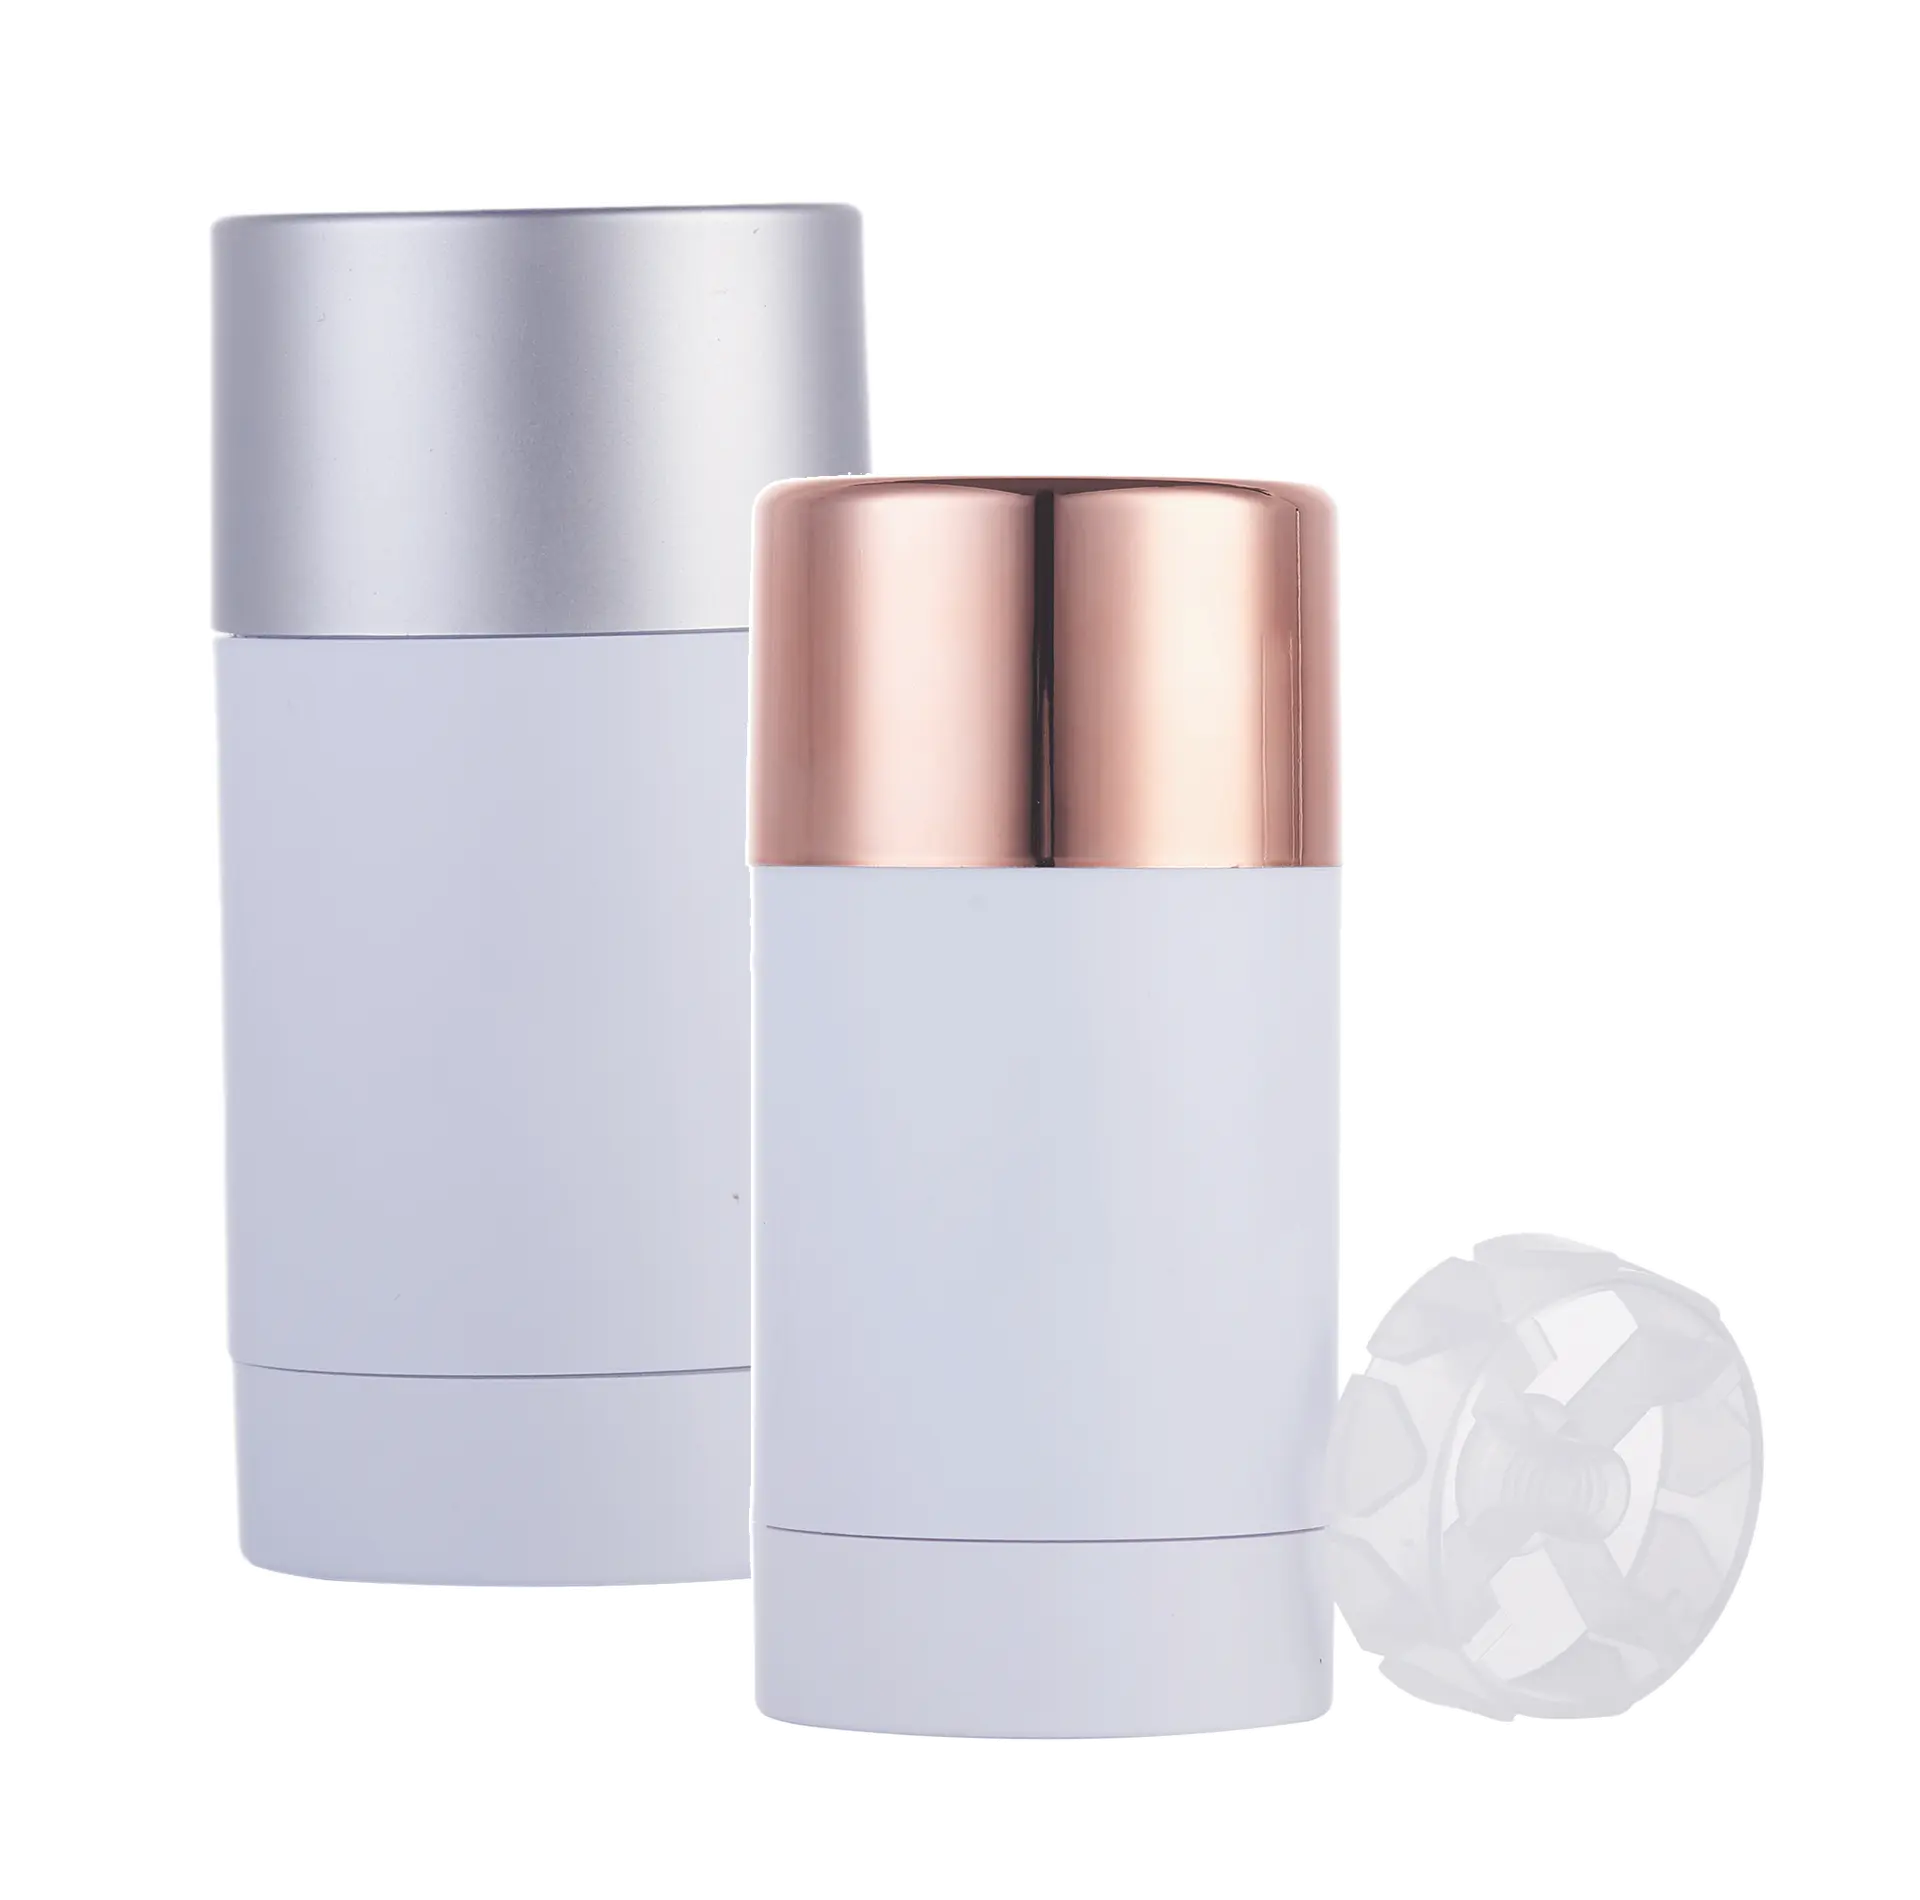 Botella desodorante de plástico con forma de cilindro, 75g, cosmética, como pegamento vacío